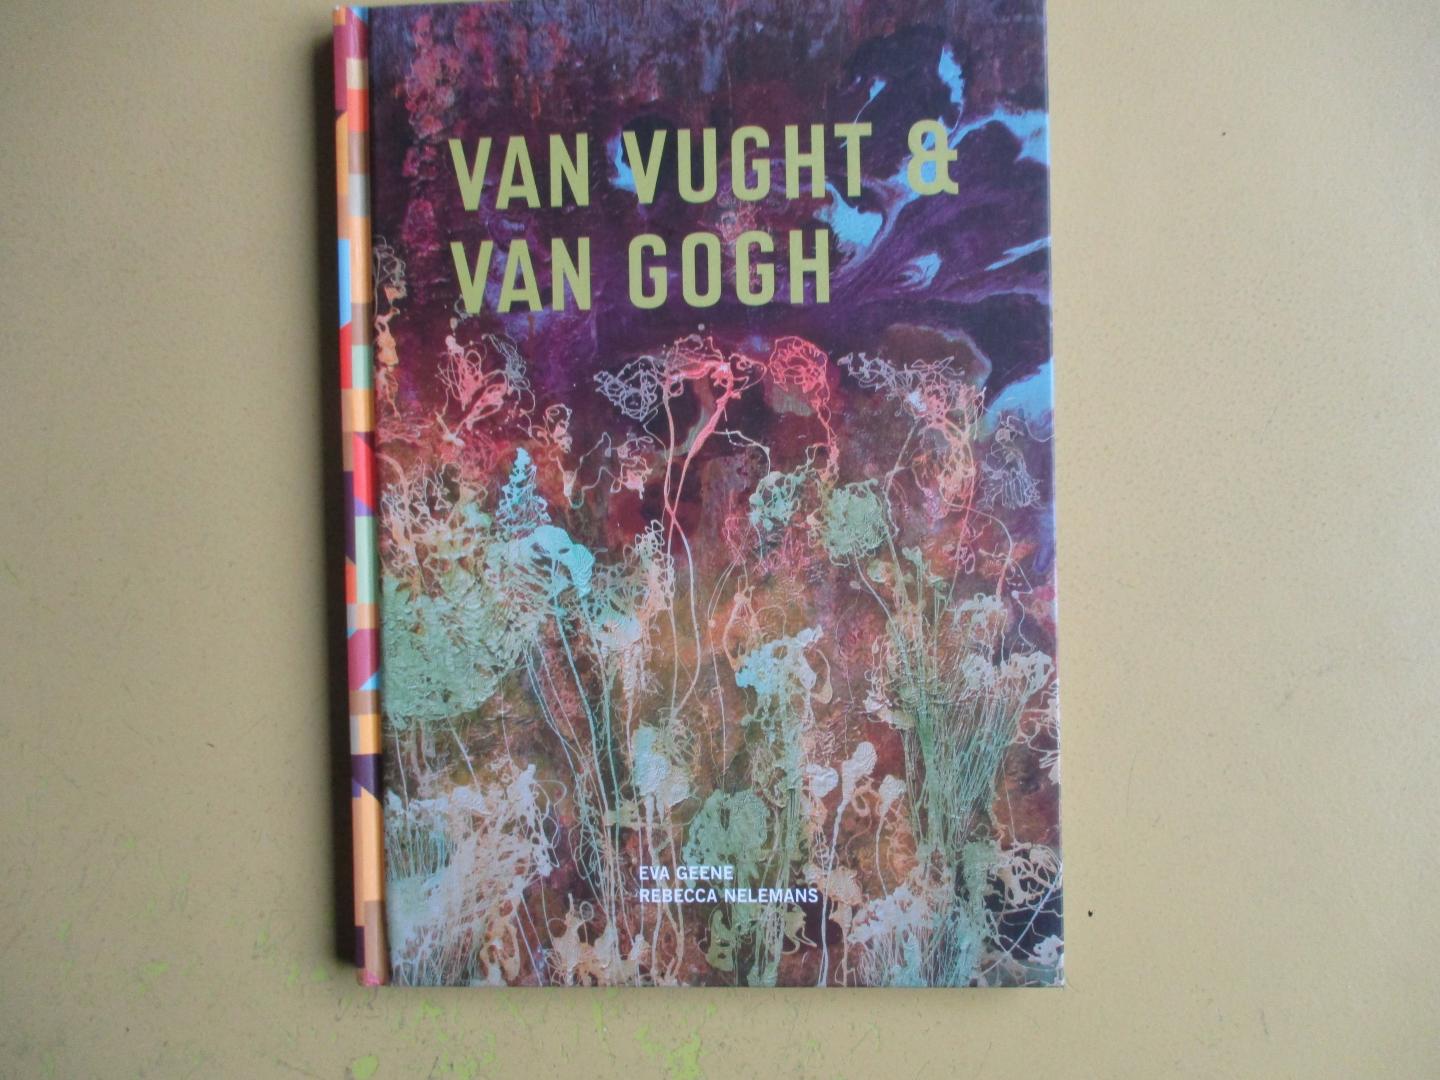 Geene, Eva, Nelemans, Rebecca, Of Course Language Institute - Van Vught & Van Gogh